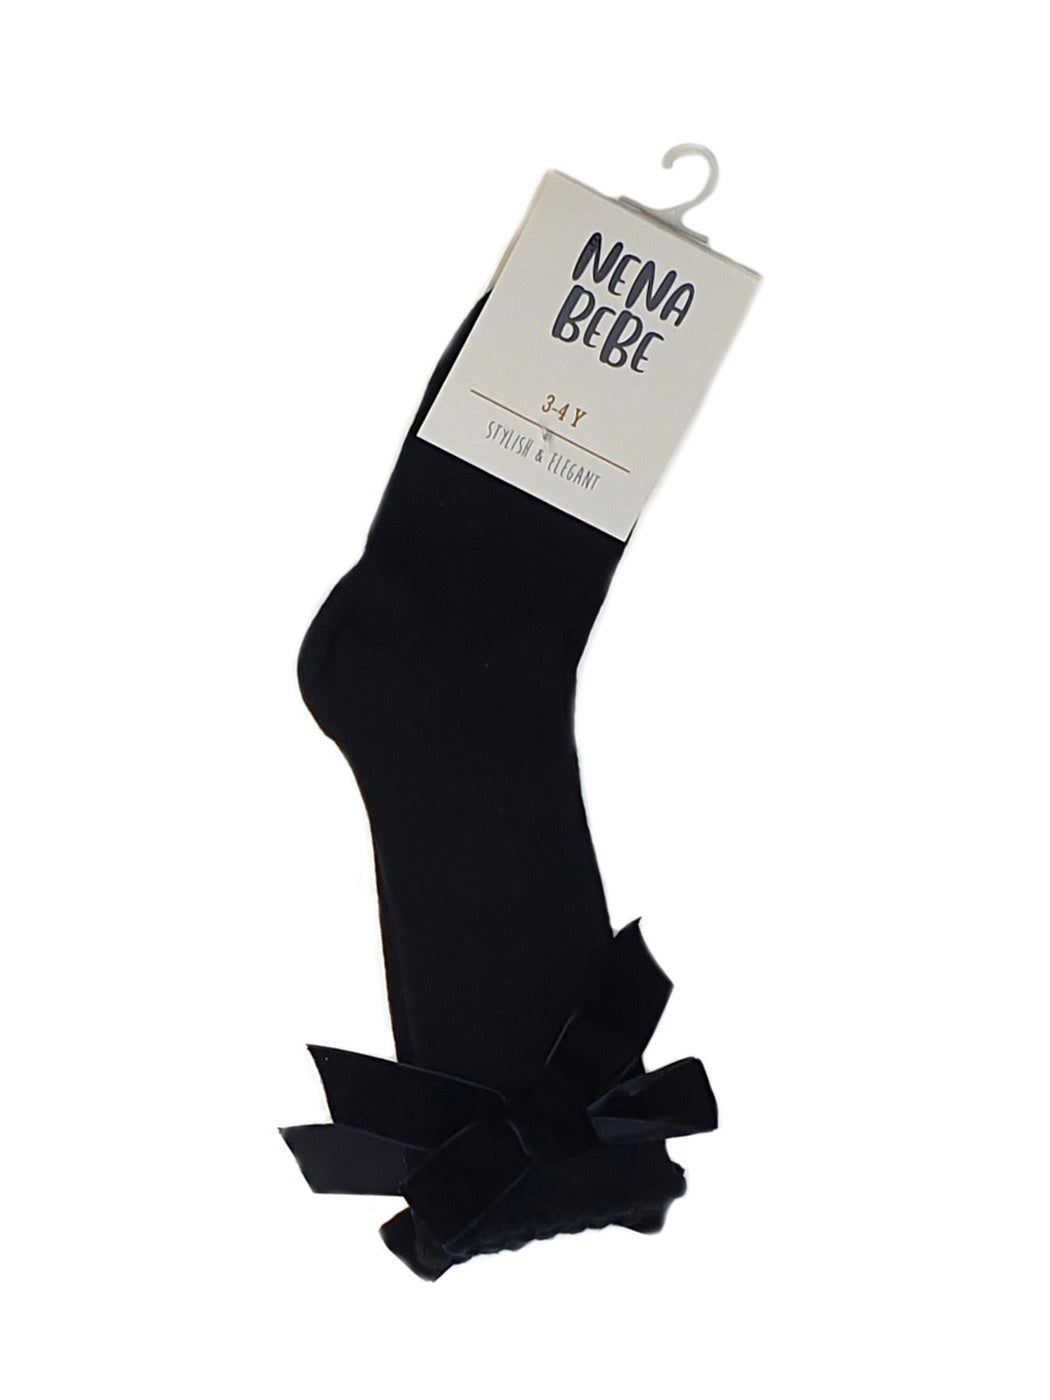 NENA BEBE Ribbed knee socks-6004 black